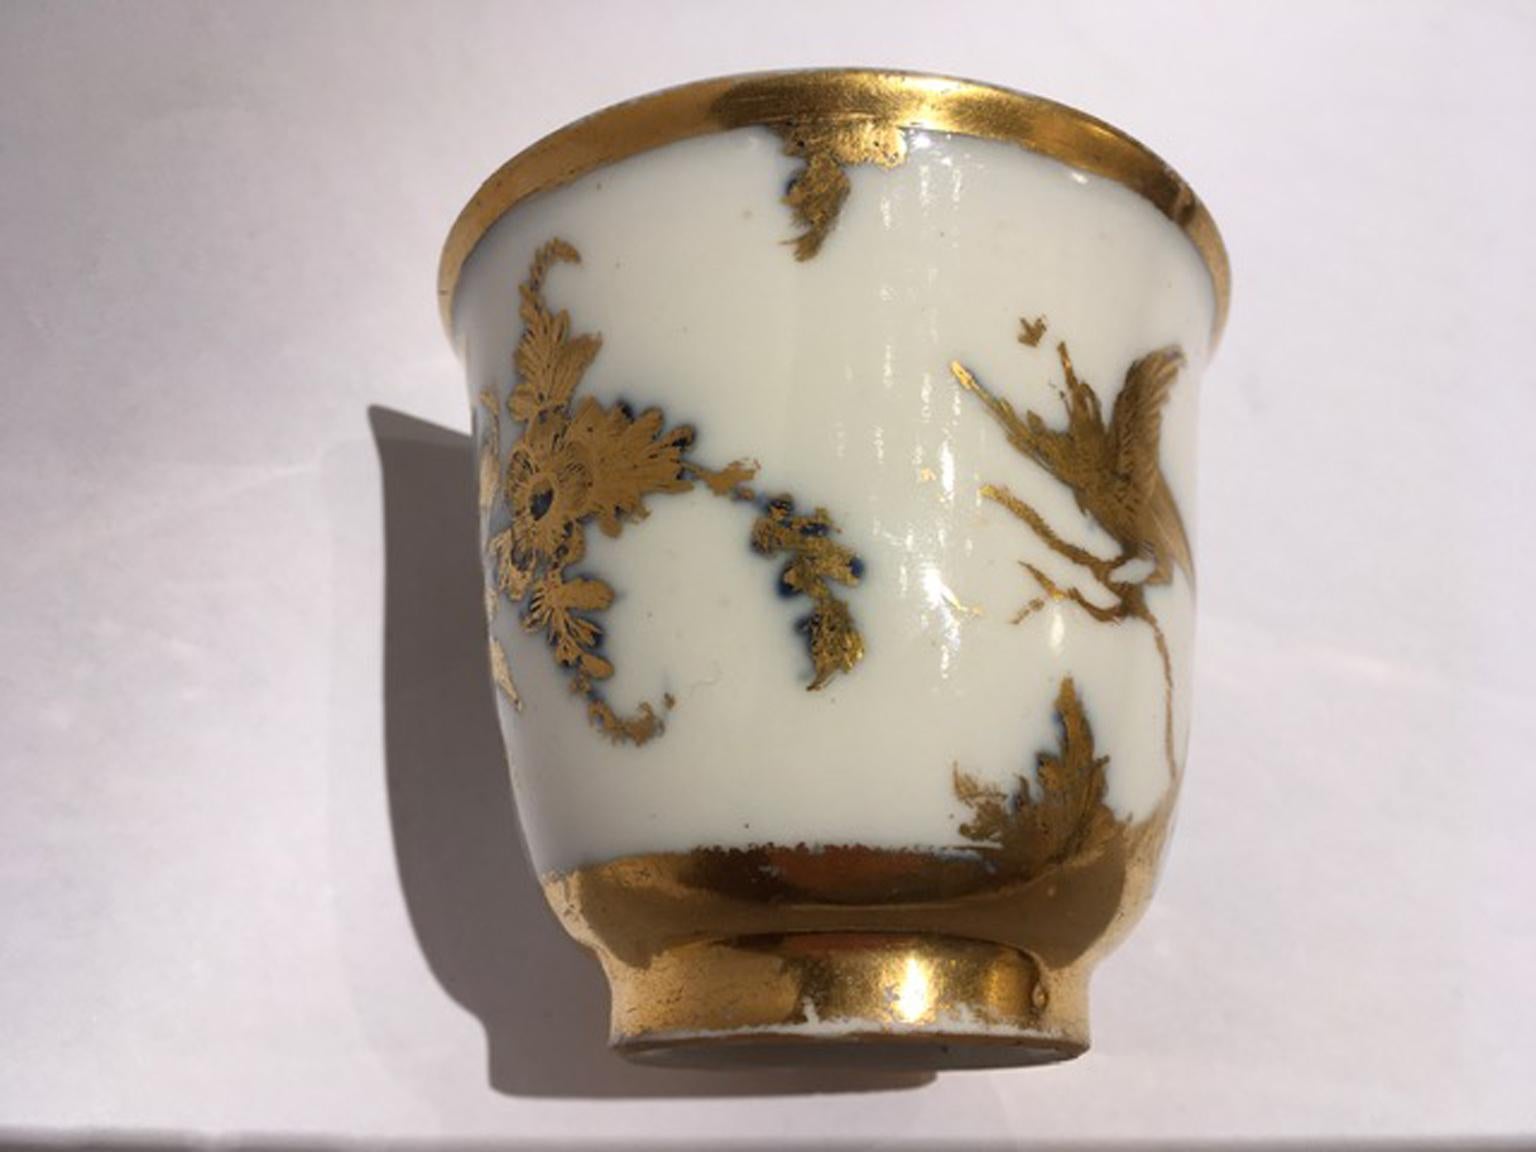 Ein kleines Meisterwerk der Handwerkskunst: Das feine Porzellan ist mit detailreichen Blumen- und Naturmotiven in Gold gestaltet.
Ein Stück für raffinierte Sammler oder nützlich, um eine Sammlung zu beginnen

Auf der Rückseite vermerkt.
Mit